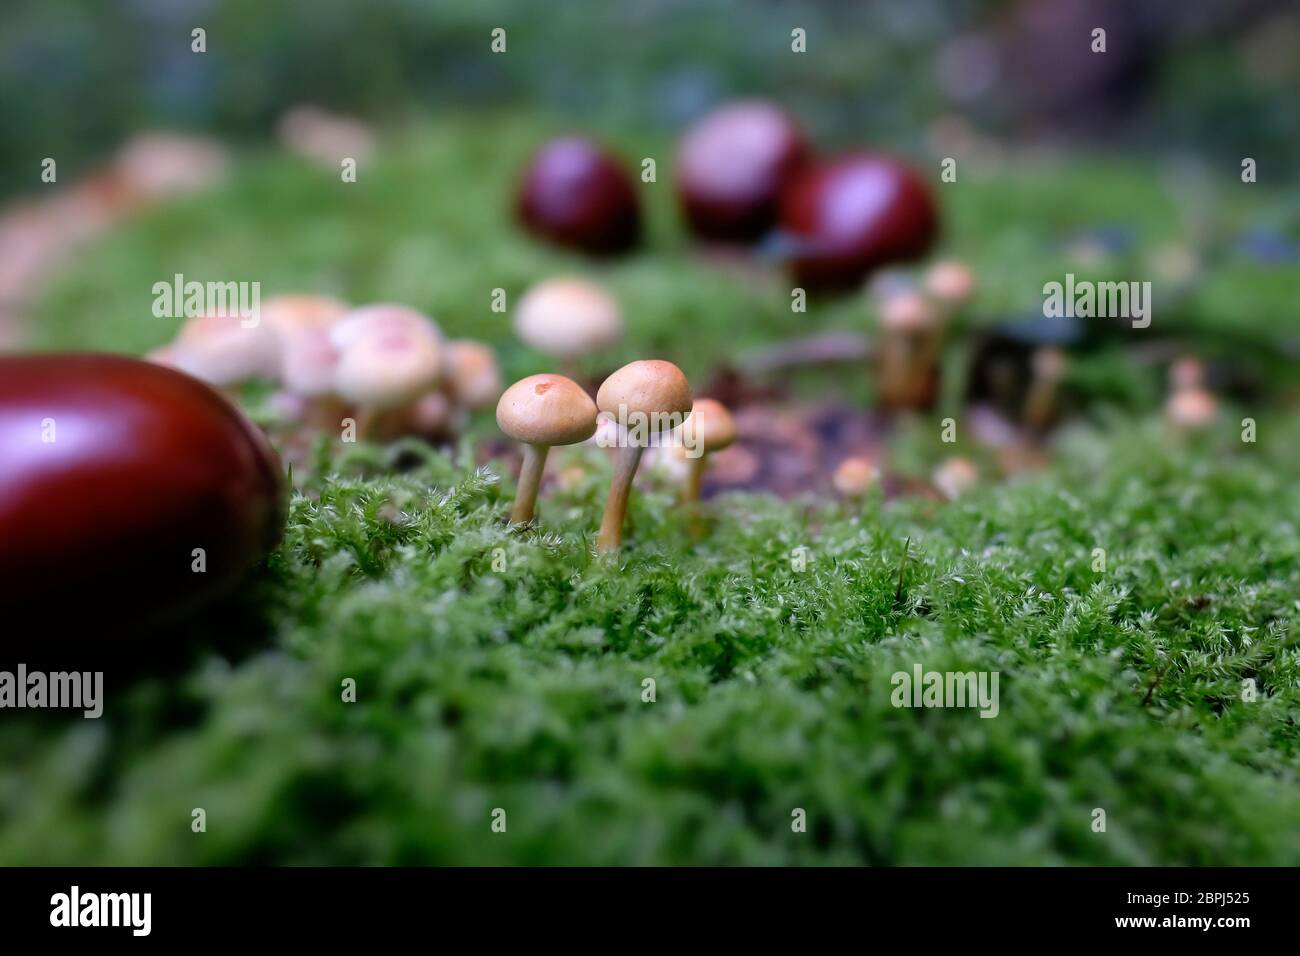 Grünblättrige Schwefelköpfe und Rosskastanie-Samen auf Moos in einer Makroaufnahme Stock Photo